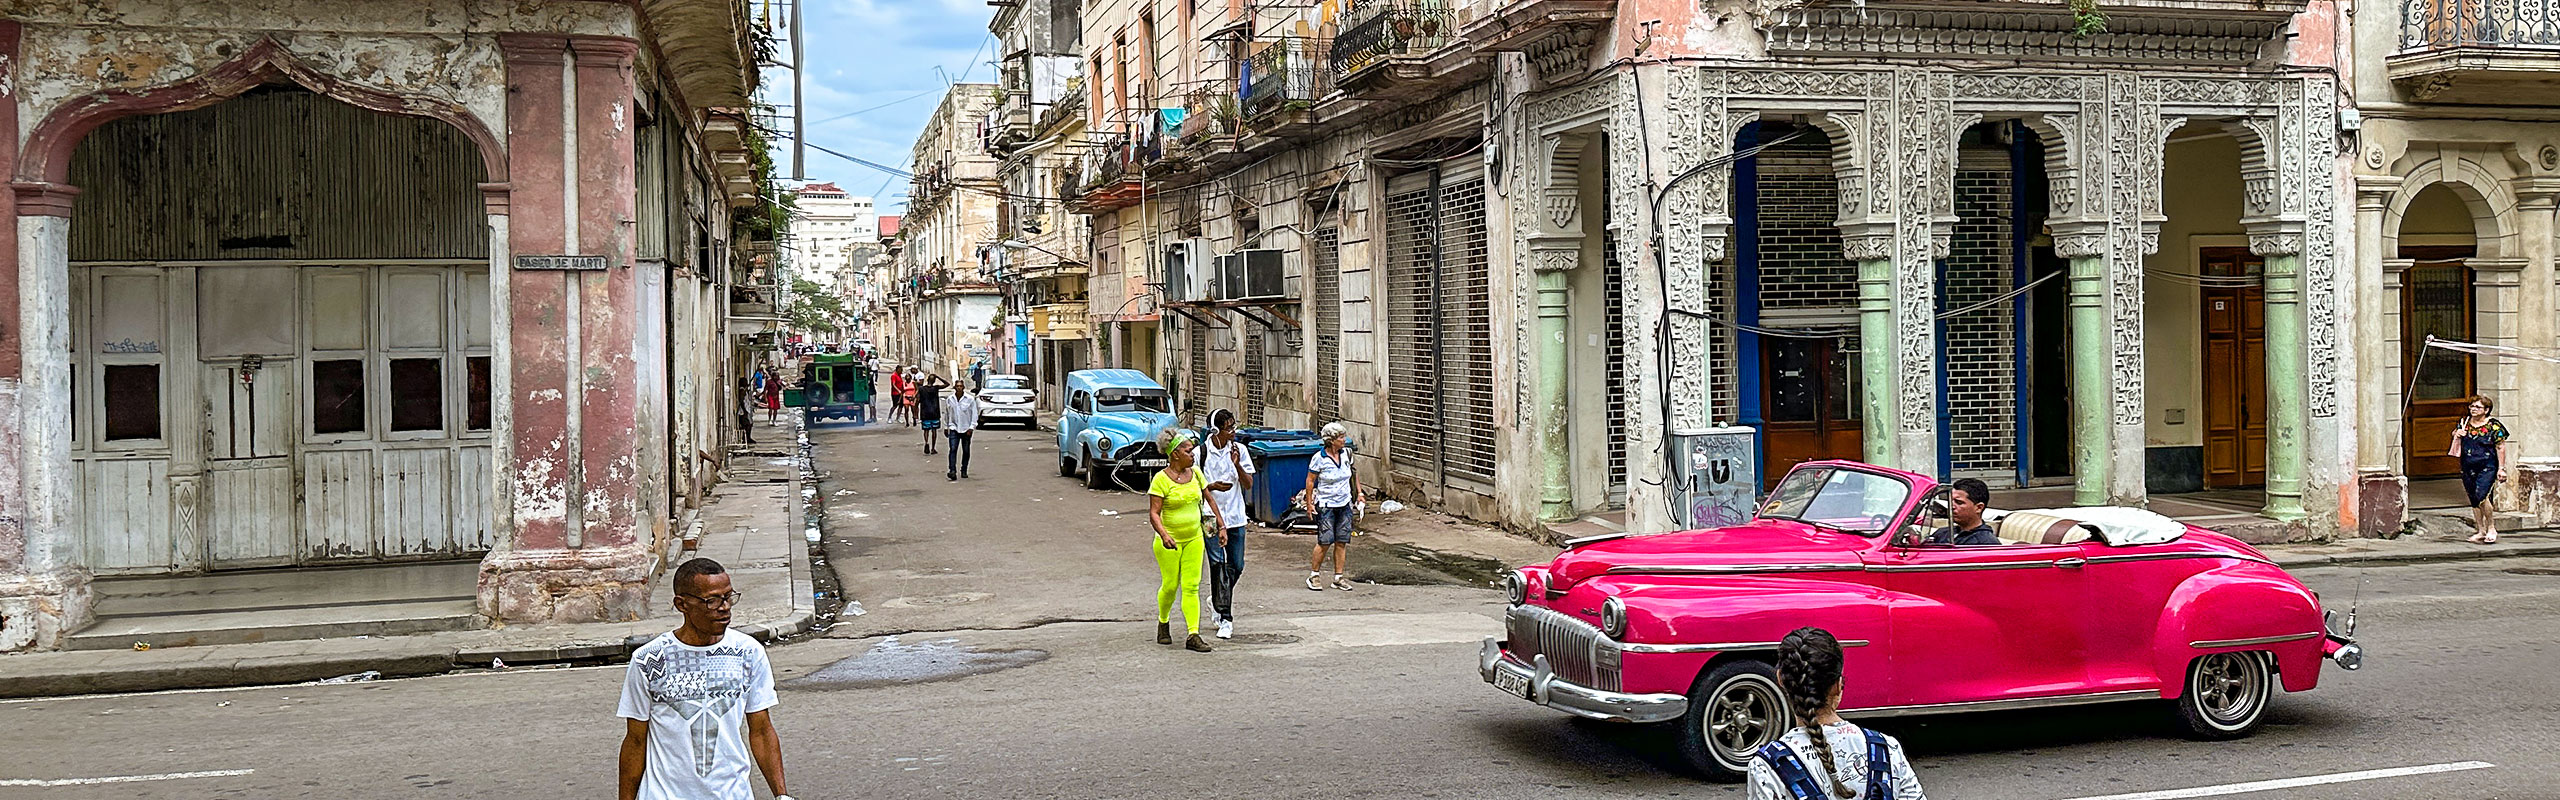 Cathedral Sqaure, Havana